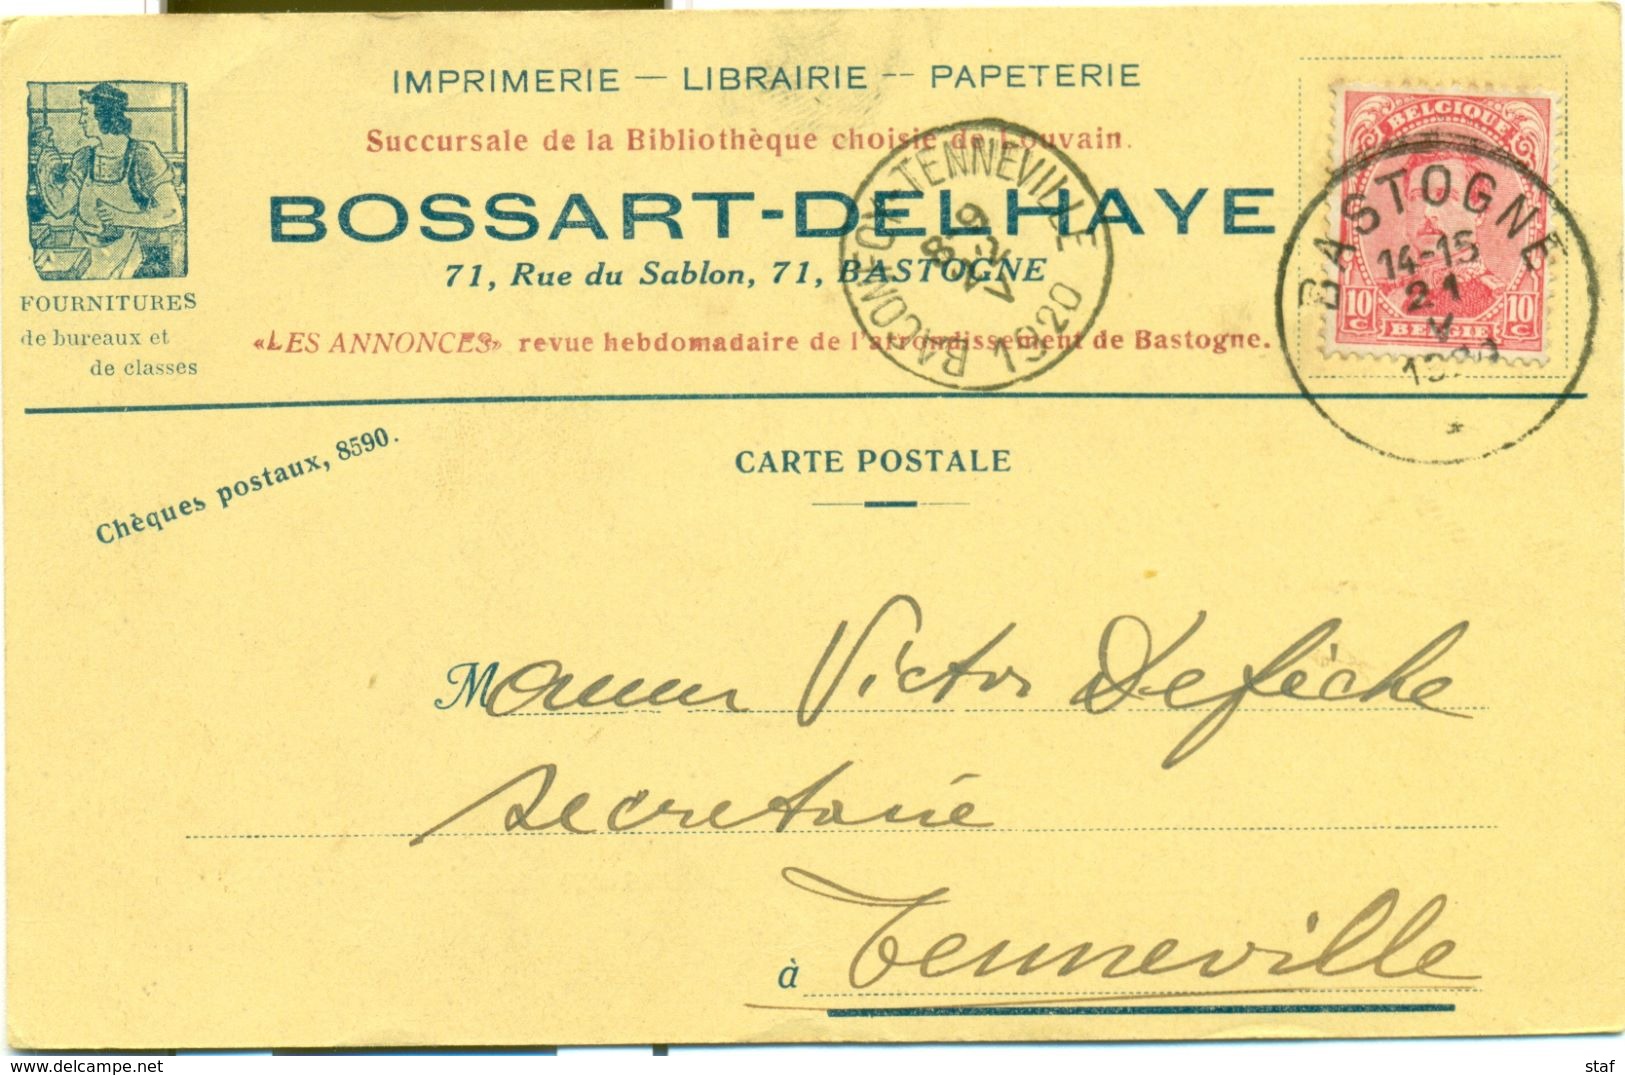 Imprimerie - Librairie - Papéterie Bossart - Delhaye à Bastogne : 1920 - Imprimerie & Papeterie